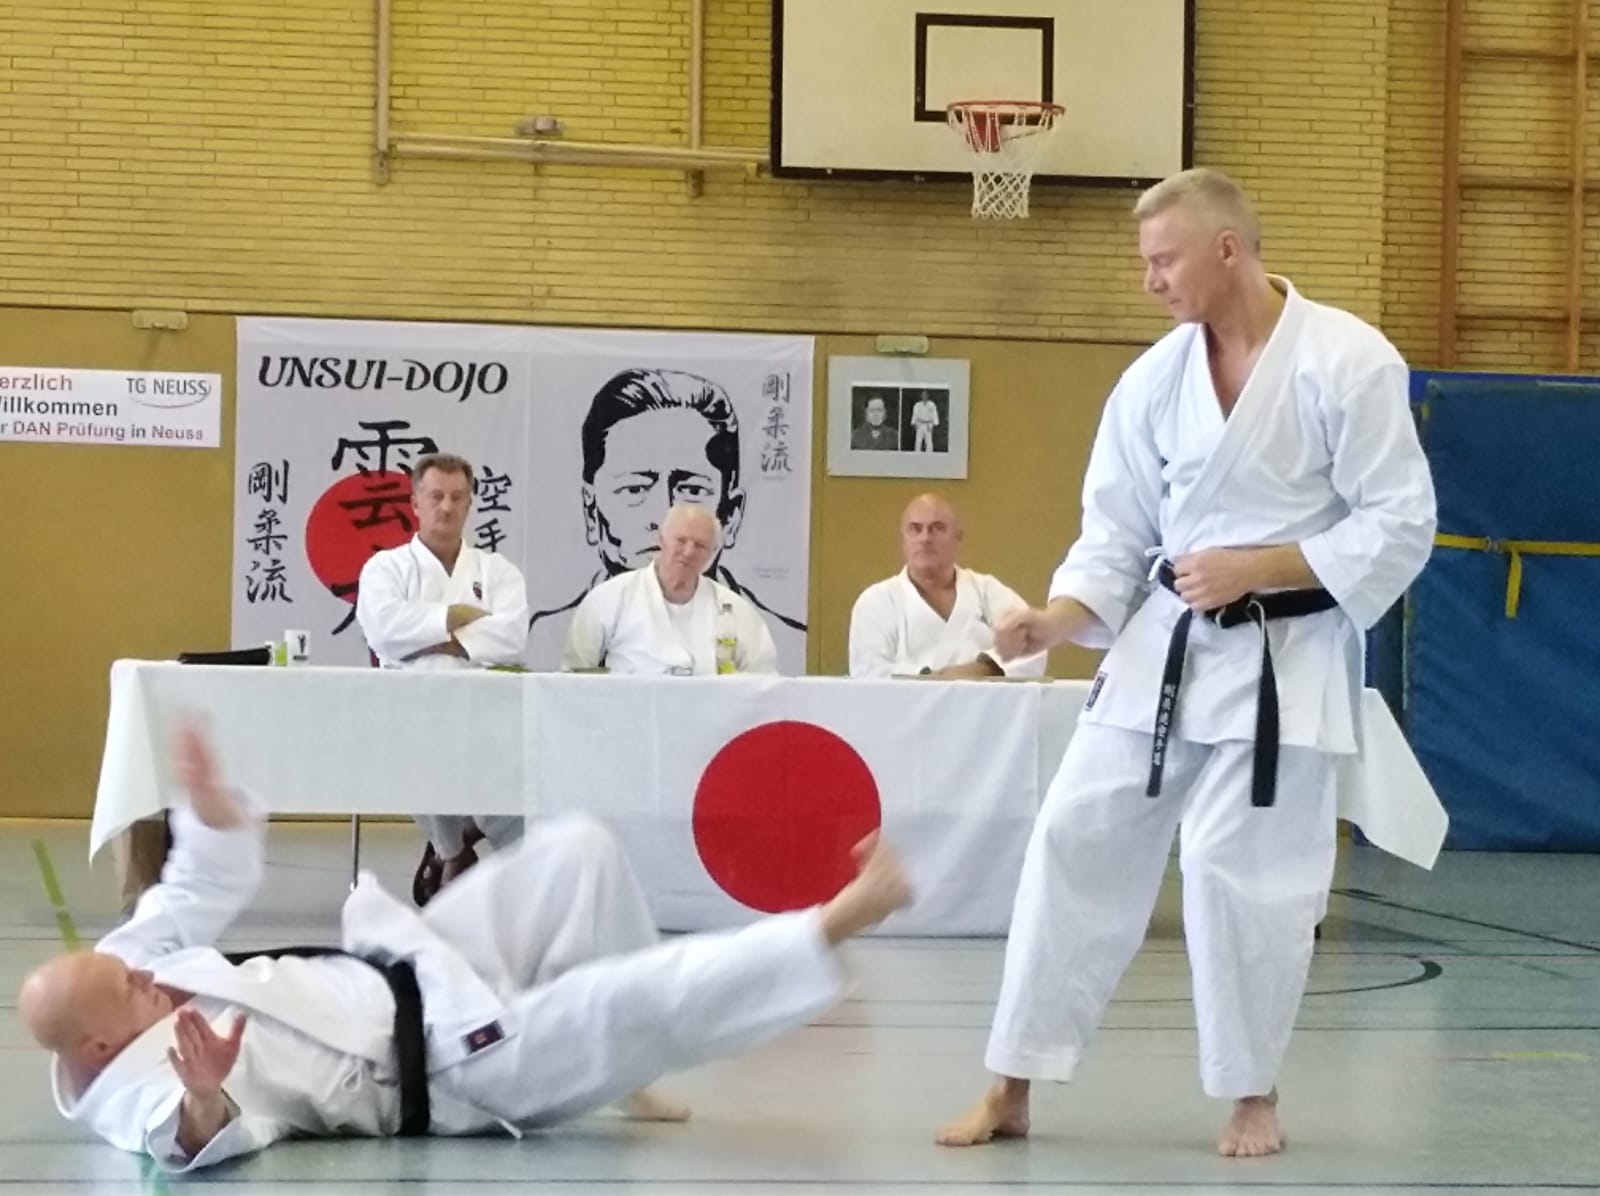 Karate Dan Prüfung von Gerd Wegner mit Partner Thomas Neumann am 23.November 2019 in Neuss